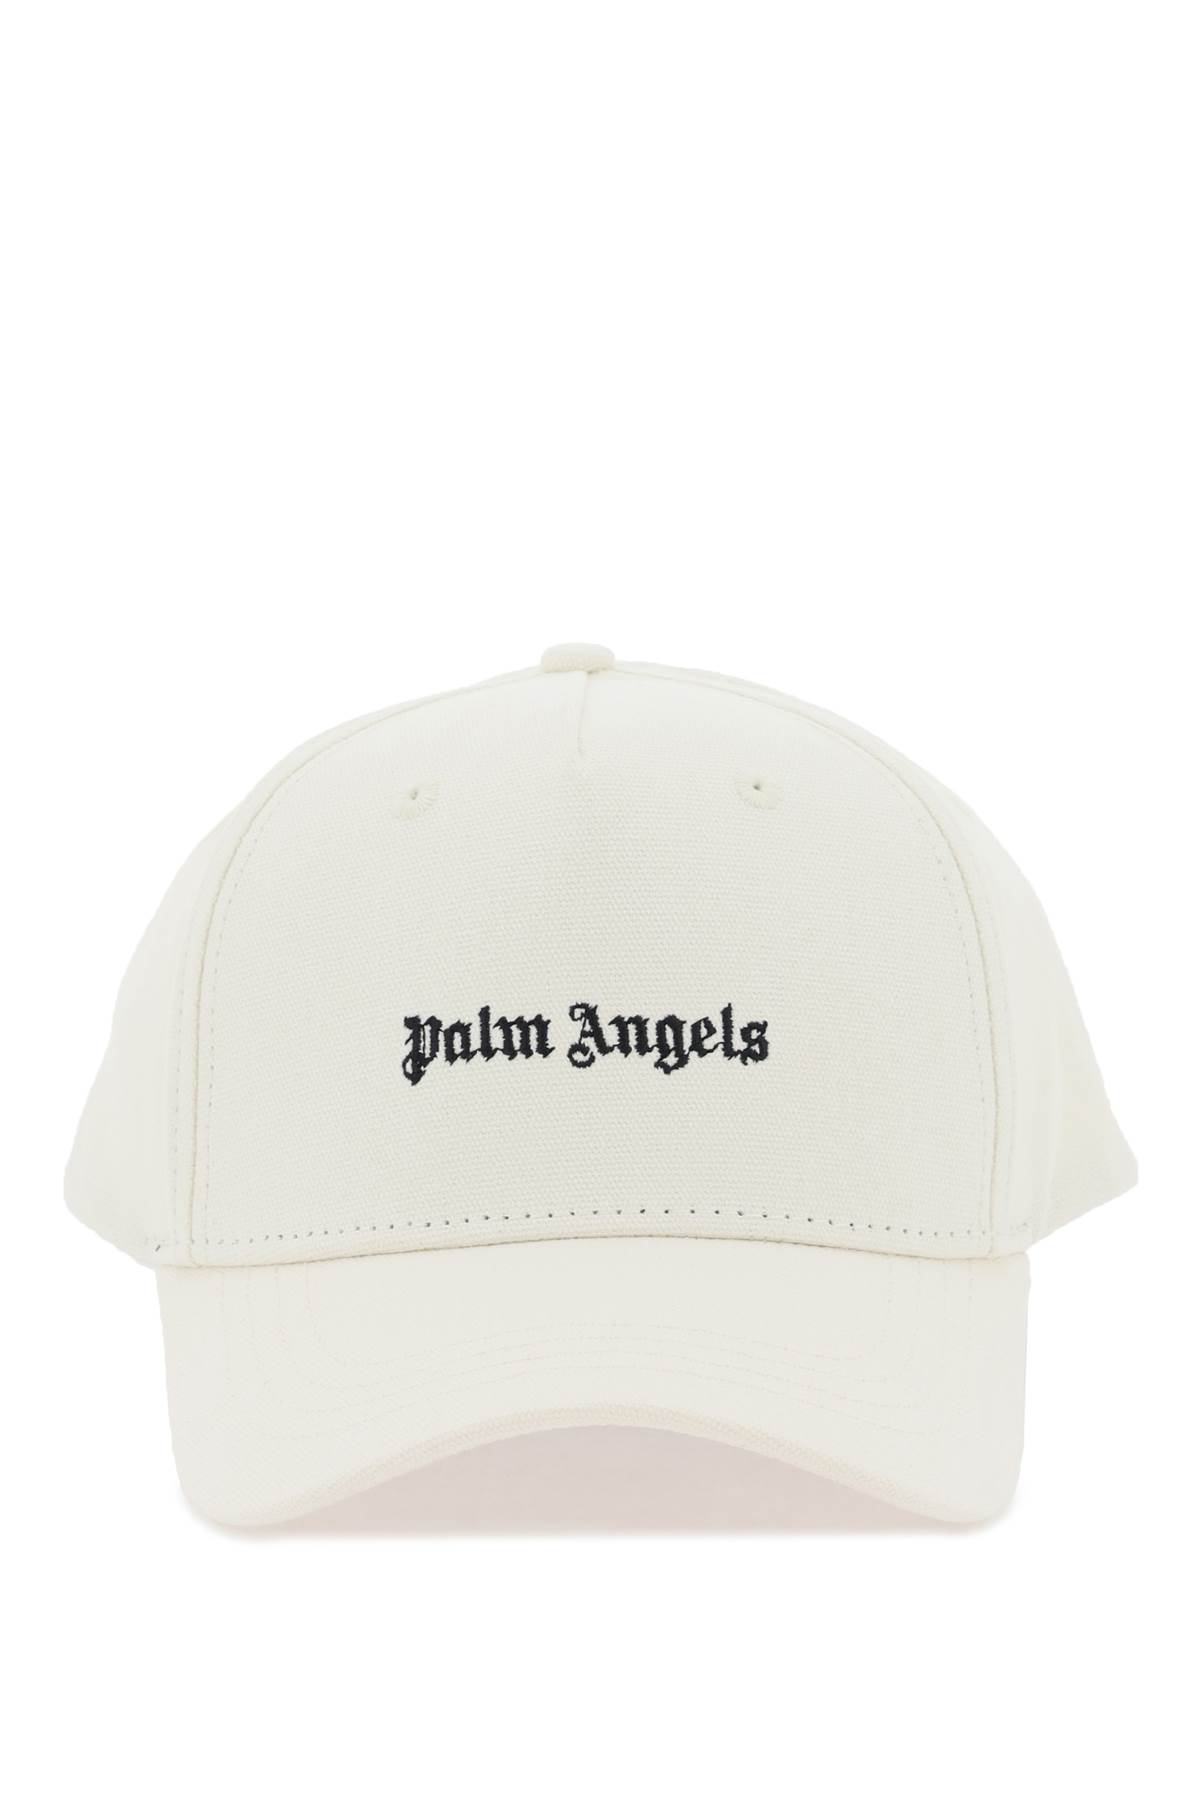 PALM ANGELS CLASSIC LOGO BASEBALL CAP